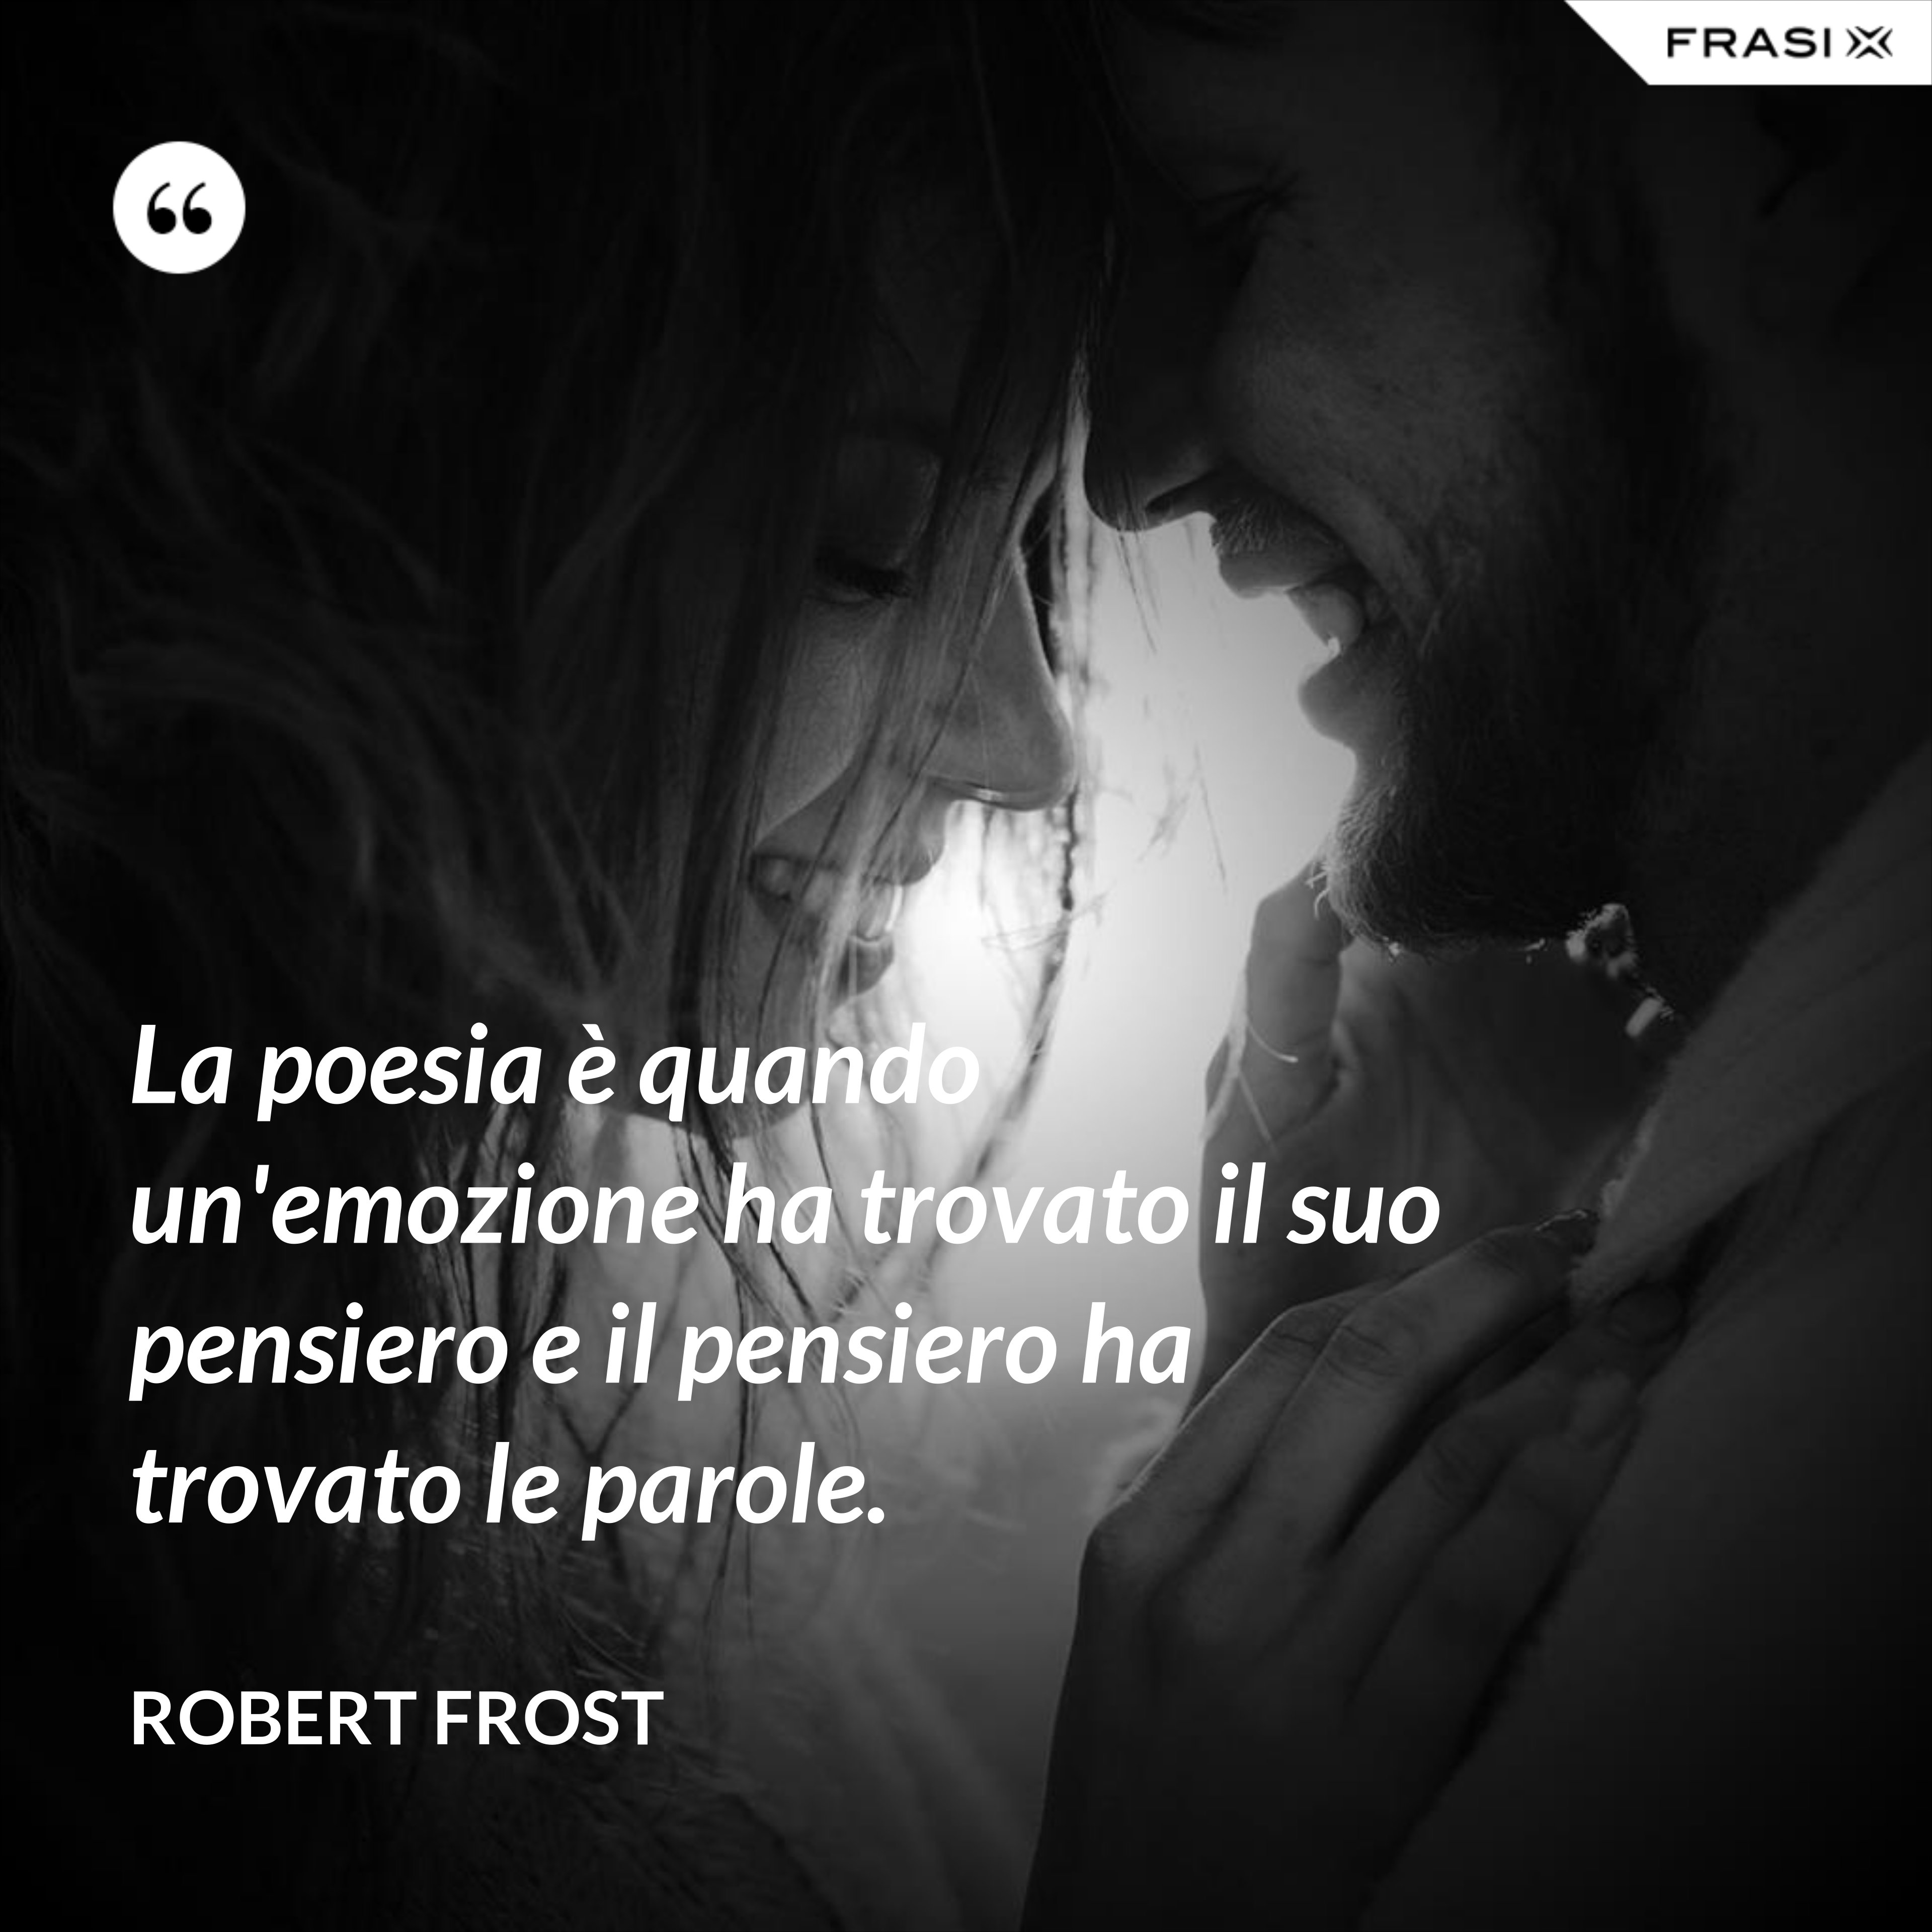 La poesia è quando un'emozione ha trovato il suo pensiero e il pensiero ha trovato le parole. - Robert Frost